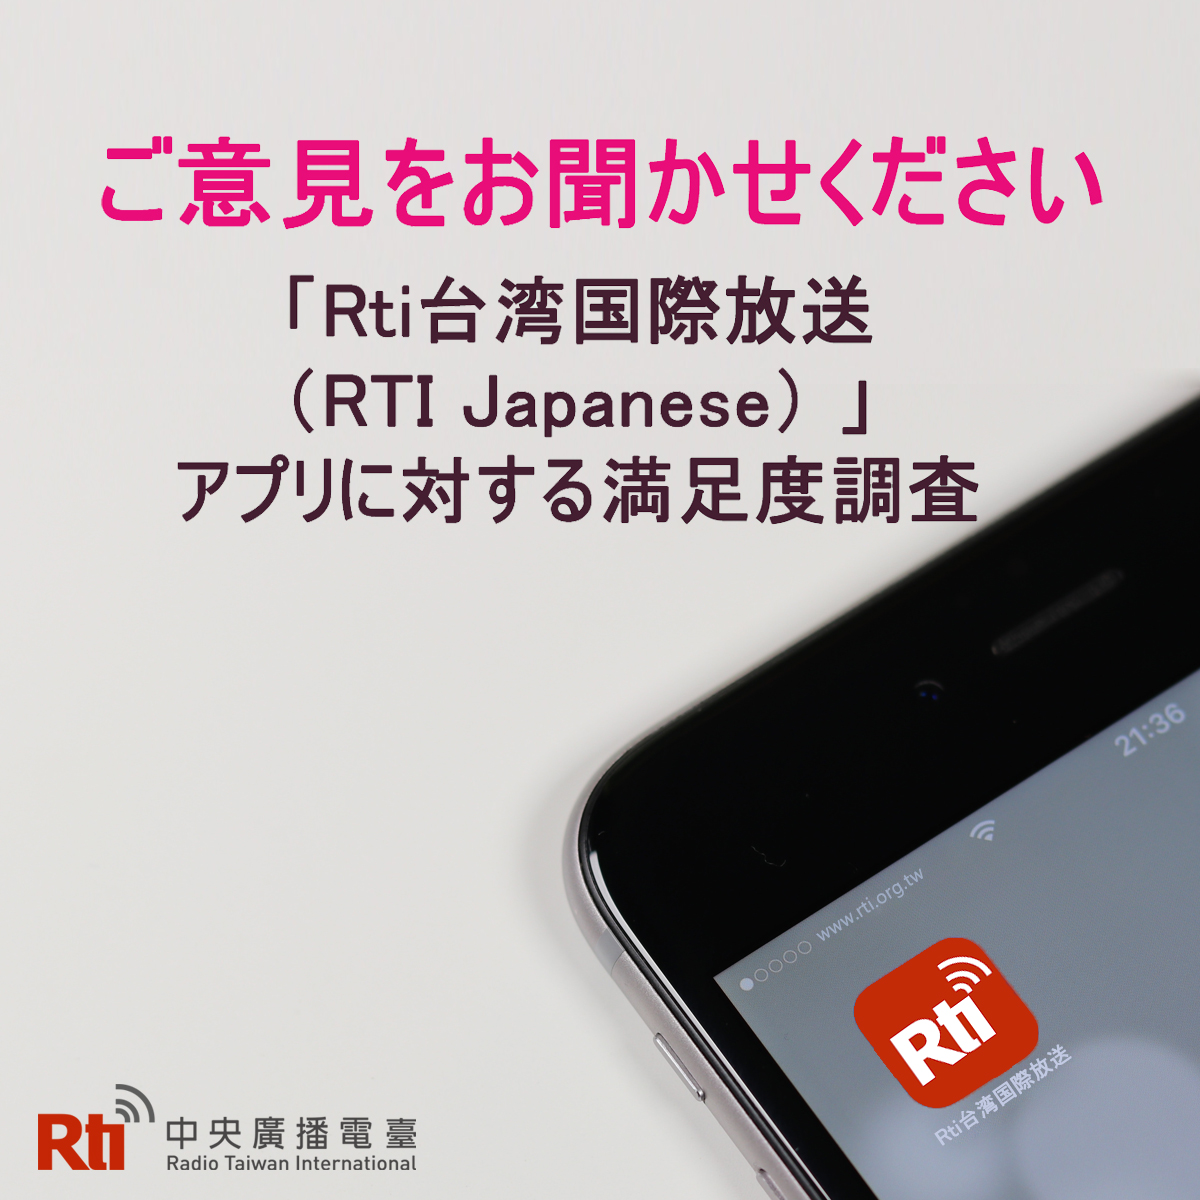 お便りありがとう - 2022-04-15_「Rti台湾国際放送」アプリに対する満足度調査、4/22まで